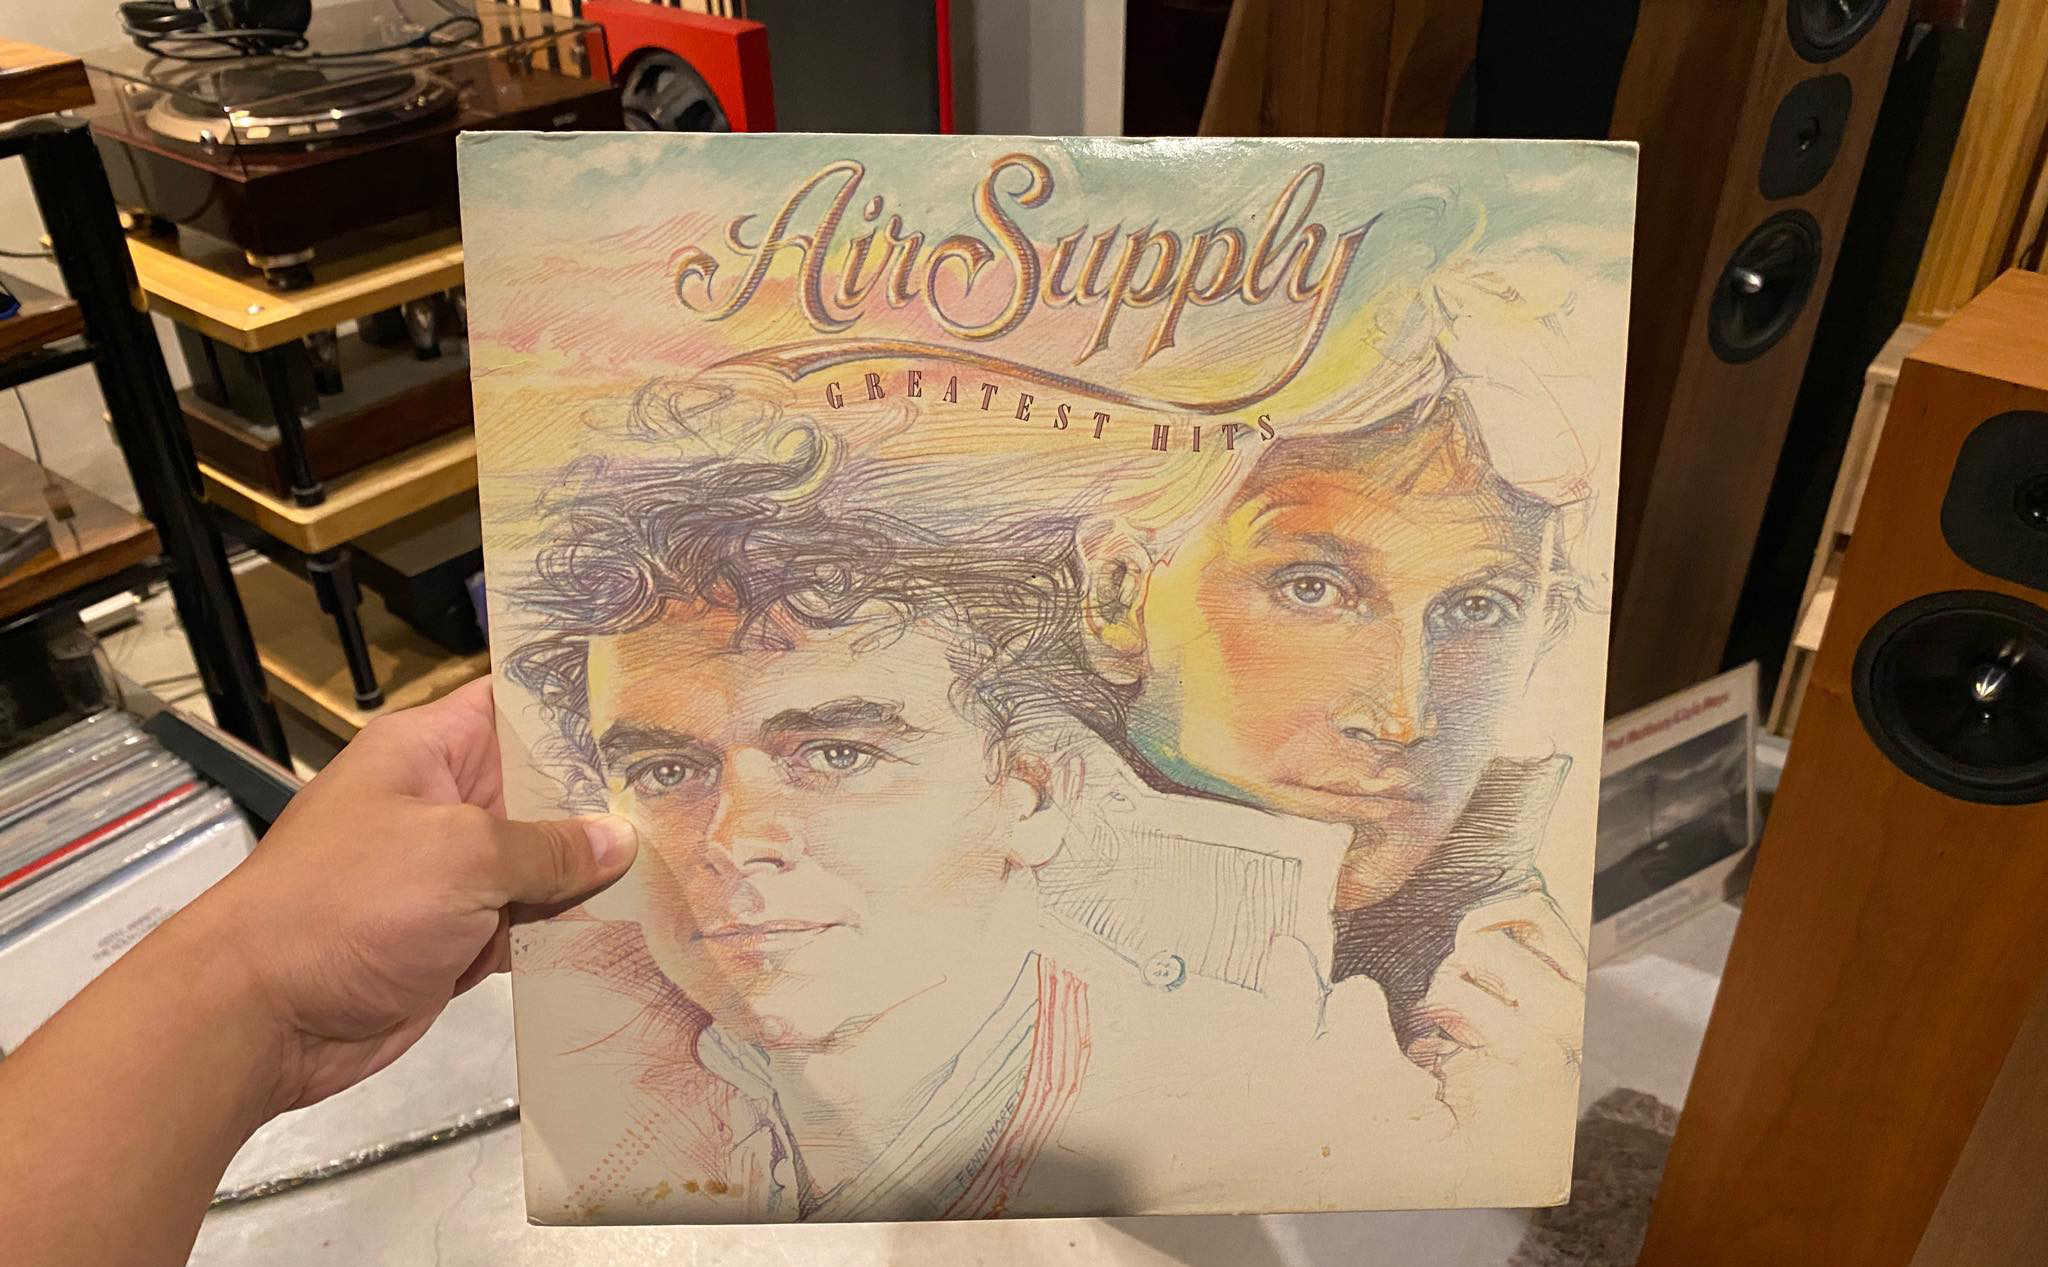 Mời nghe Air Supply, cùng chia sẻ band nhạc anh em hay nghe thời niên thiếu